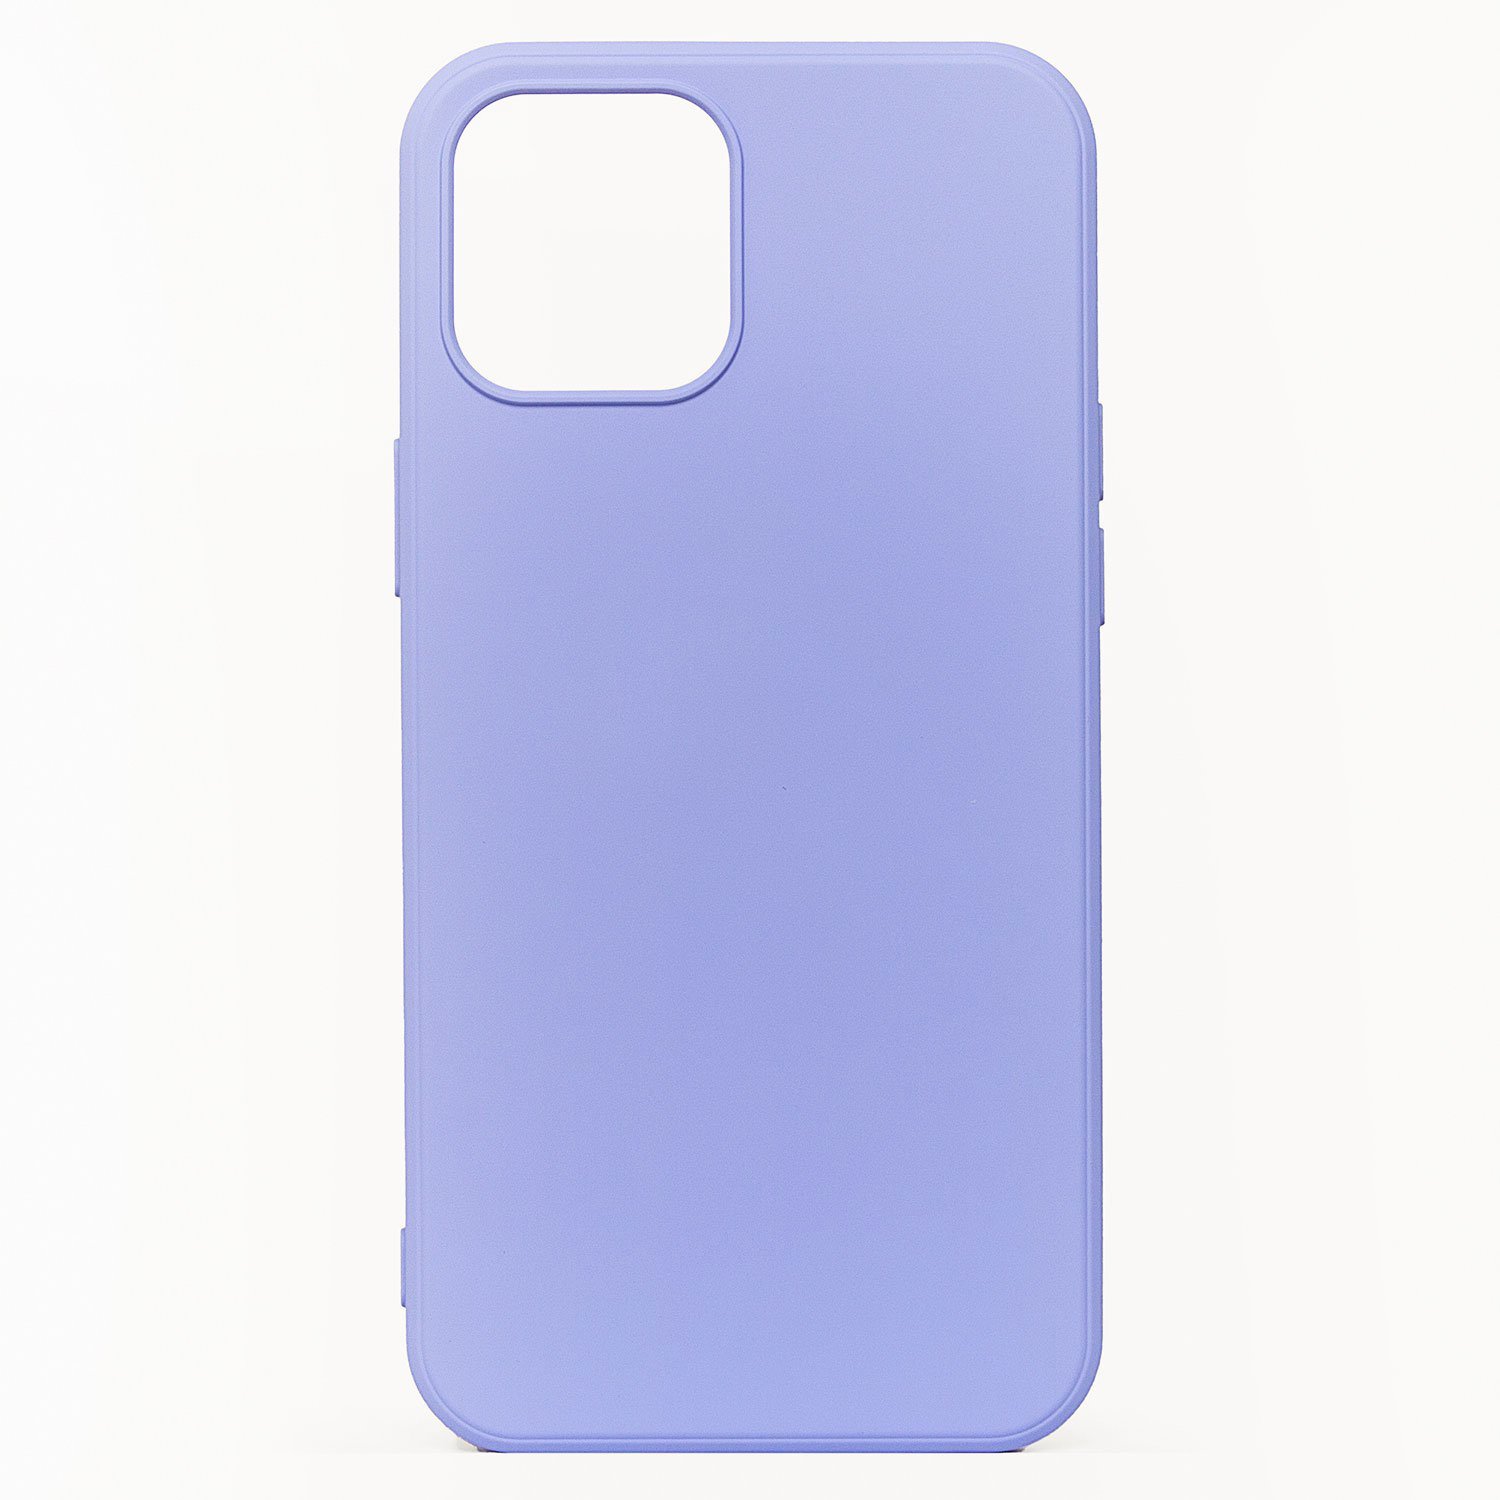 Чехол для Apple iPhone 12 mini силиконовый Soft Touch 2 <светло-фиолетовый>,  купить в Москве, цены в интернет-магазинах на Мегамаркет